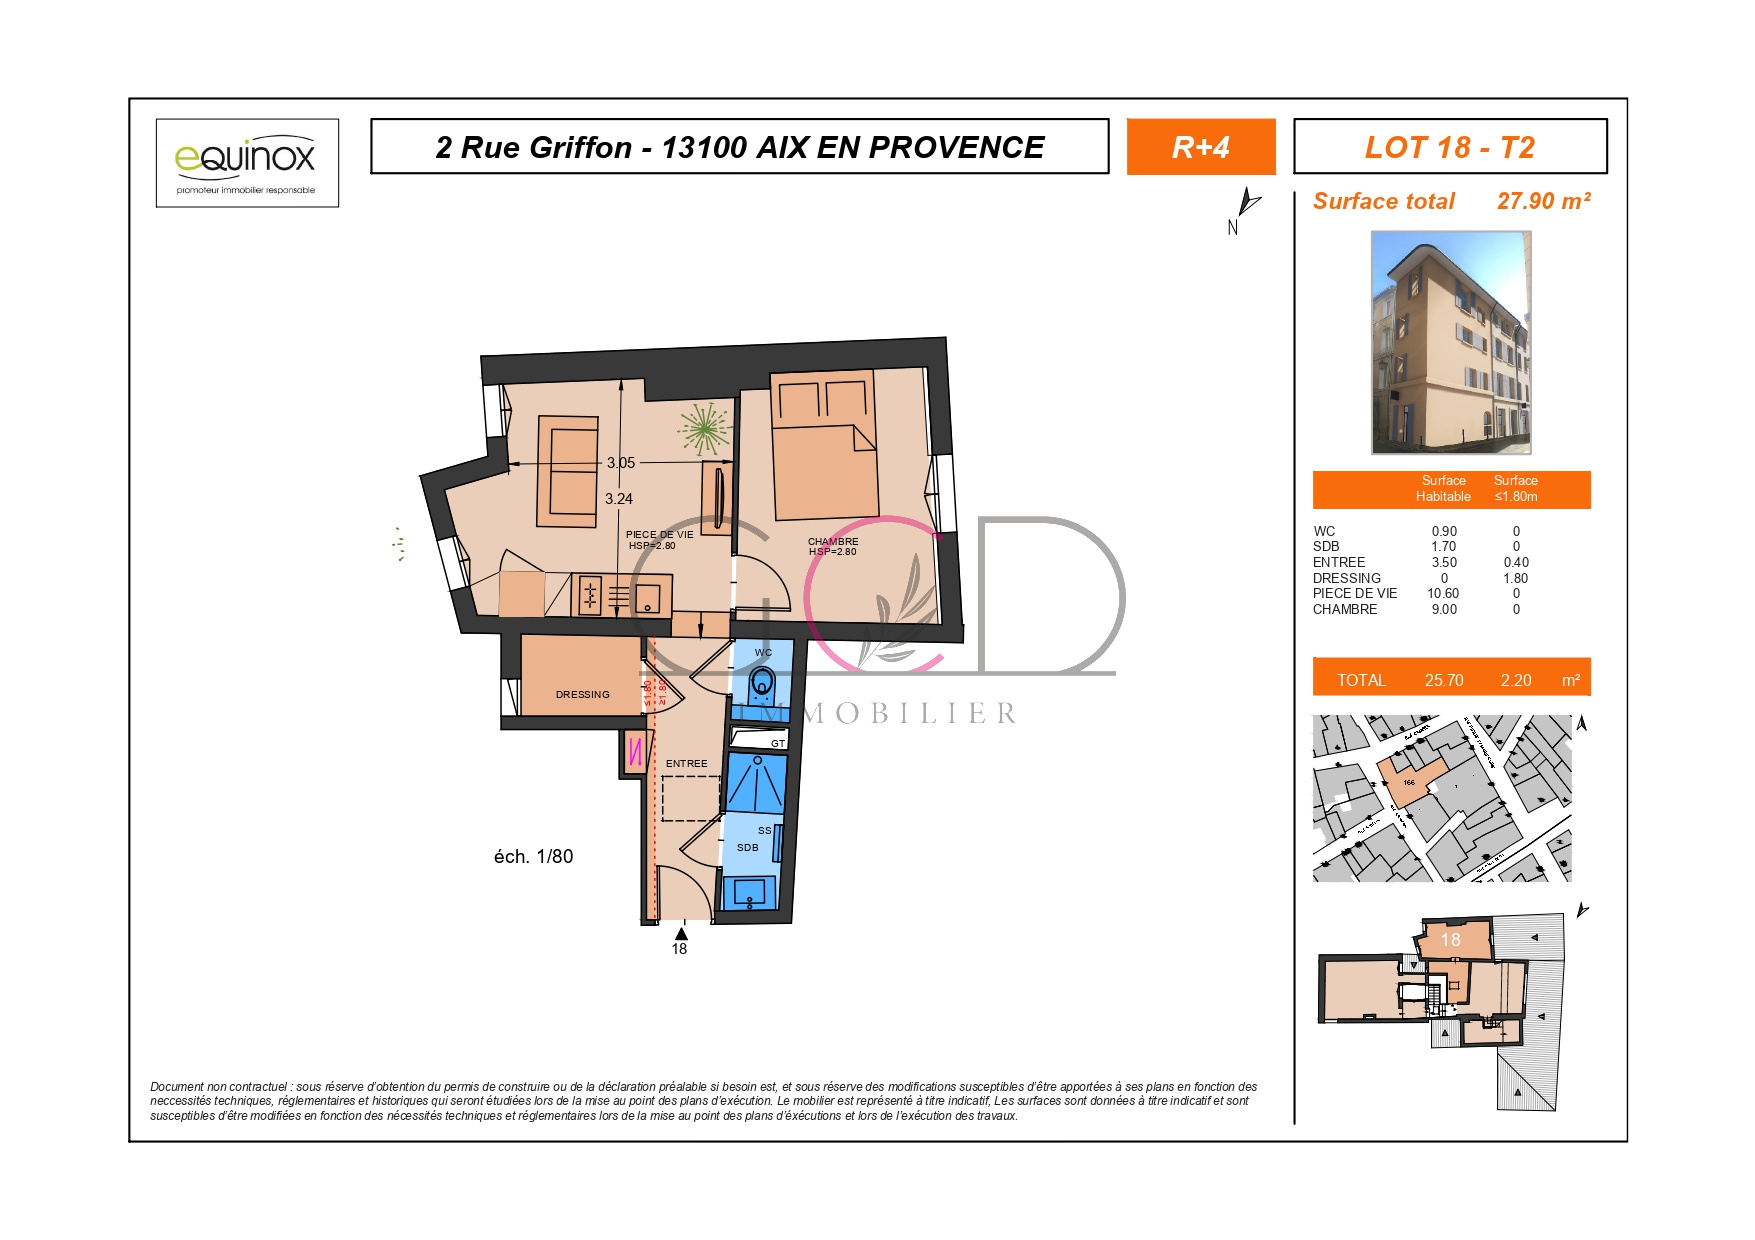 Vente Appartement 28m² 2 Pièces à Aix en Provence (13100) - Gcd Immobilier